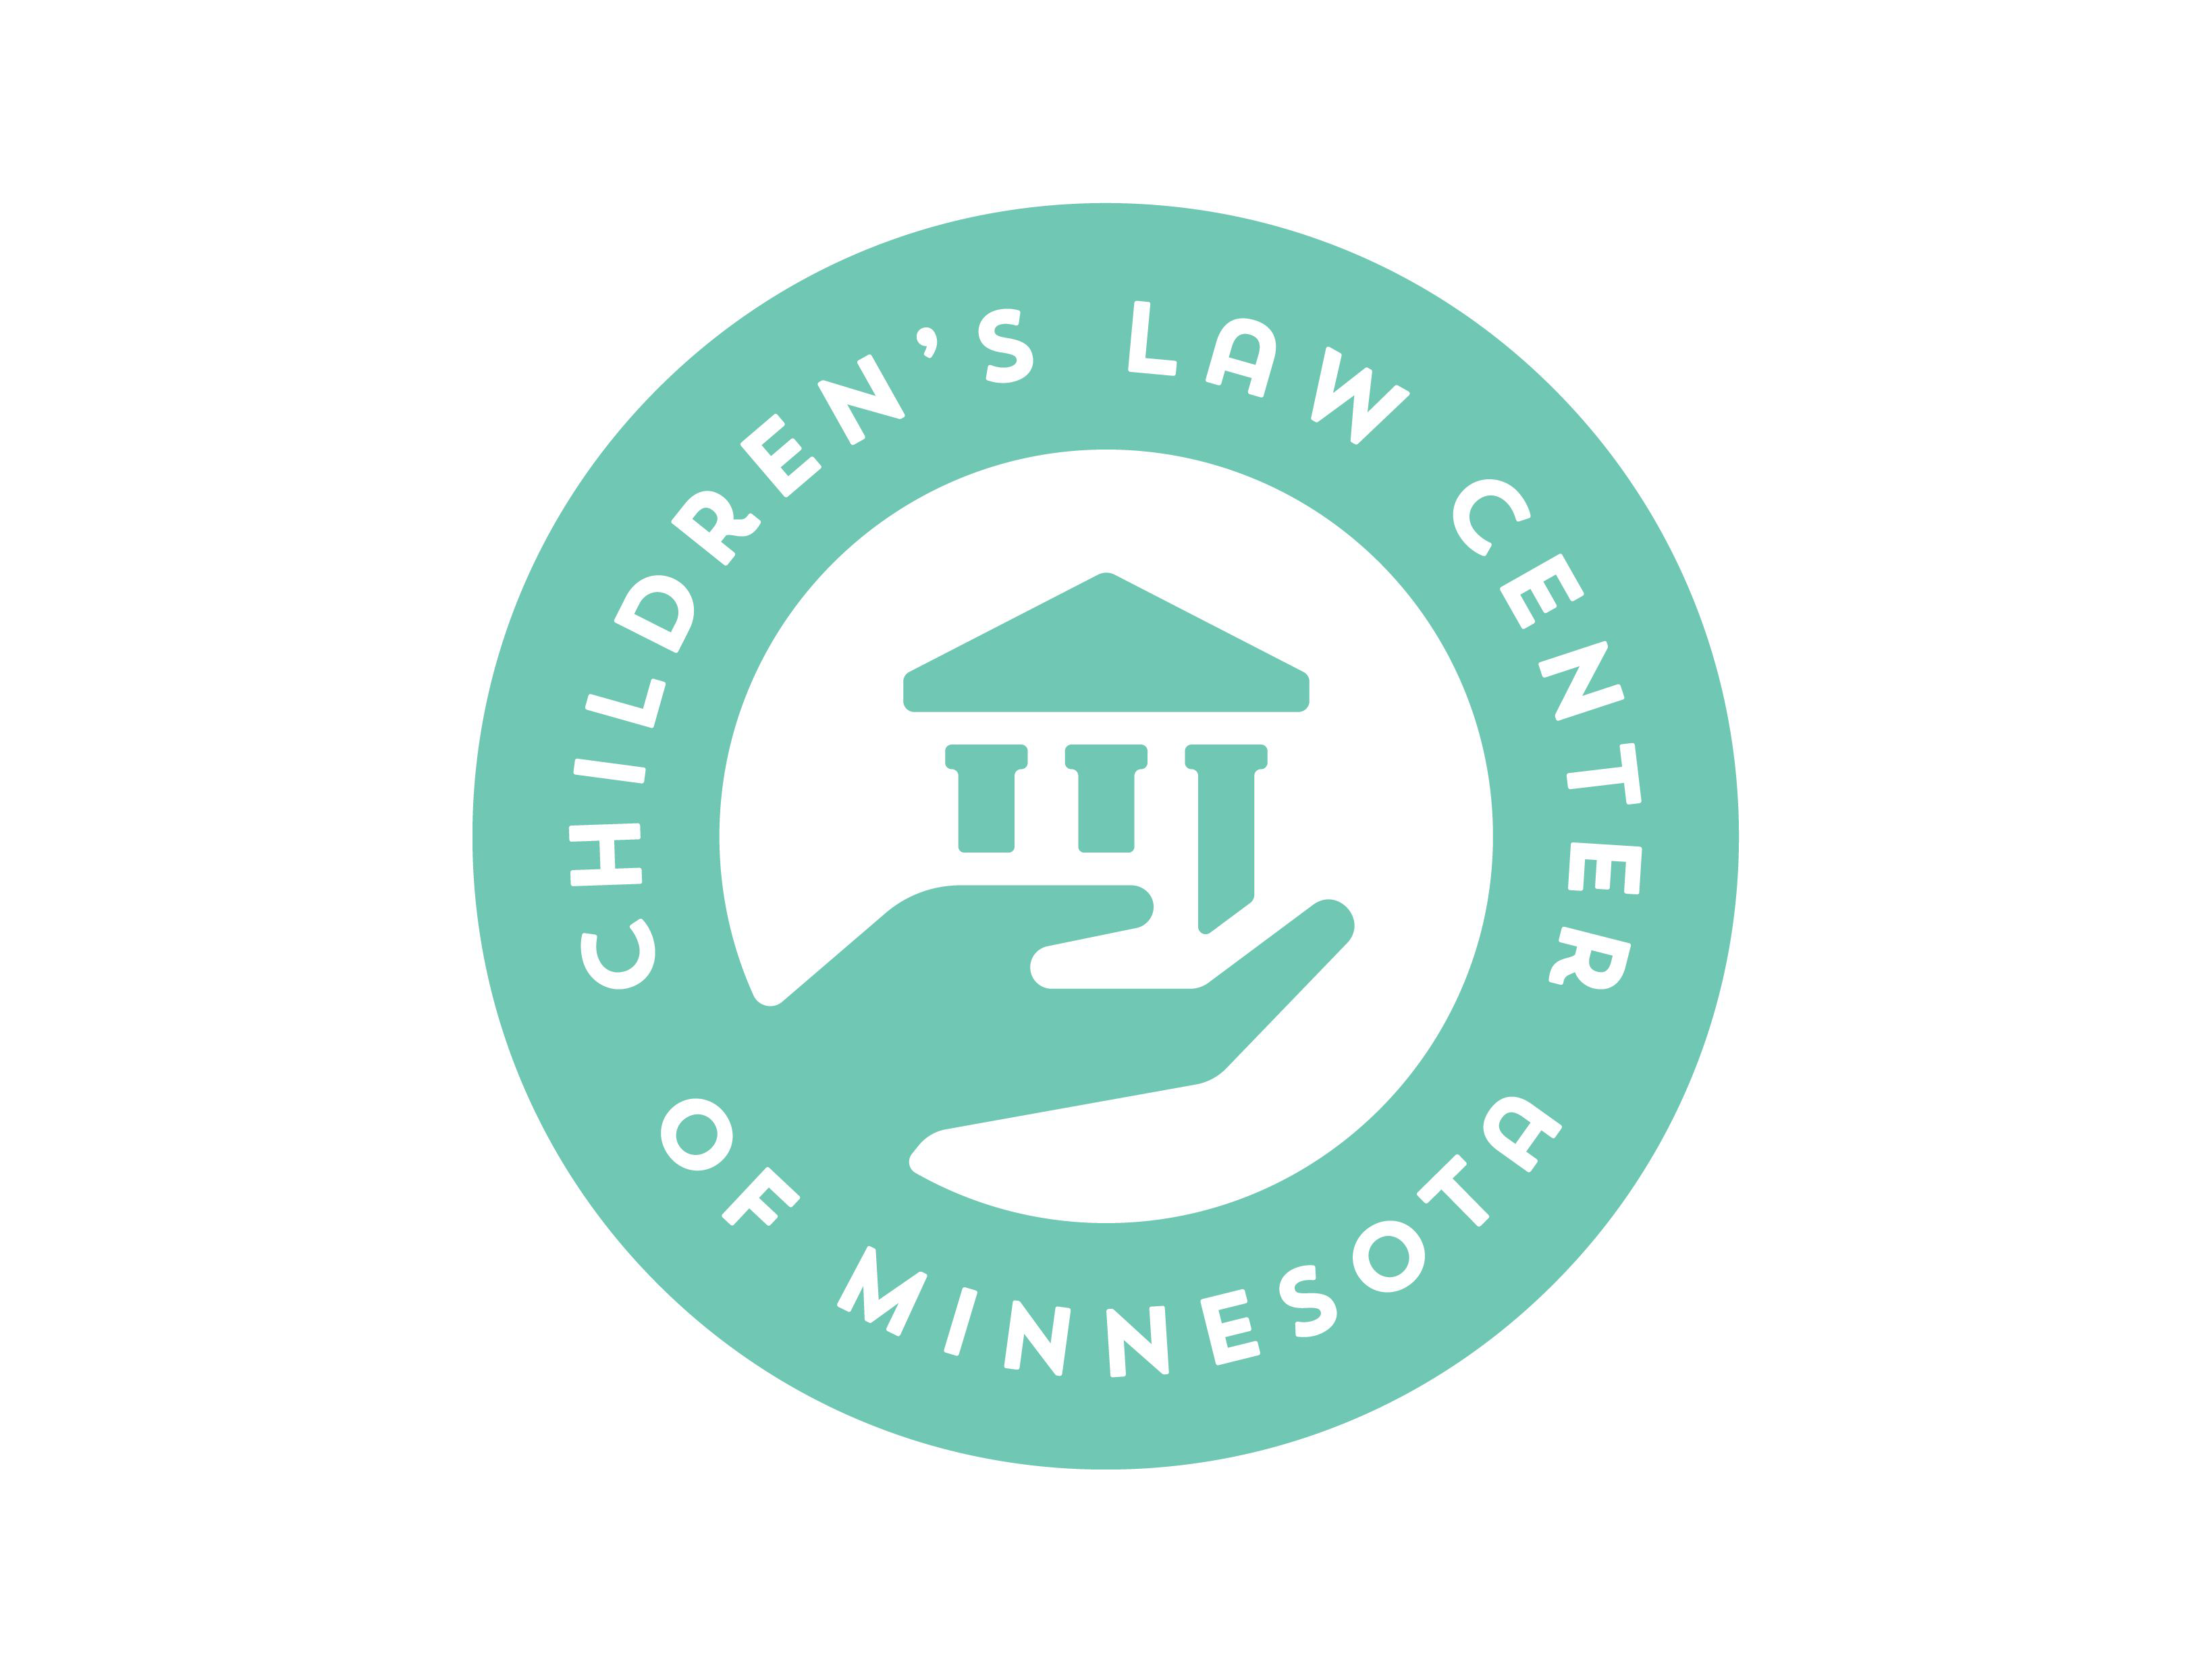 Children's Law Center of Minnesota